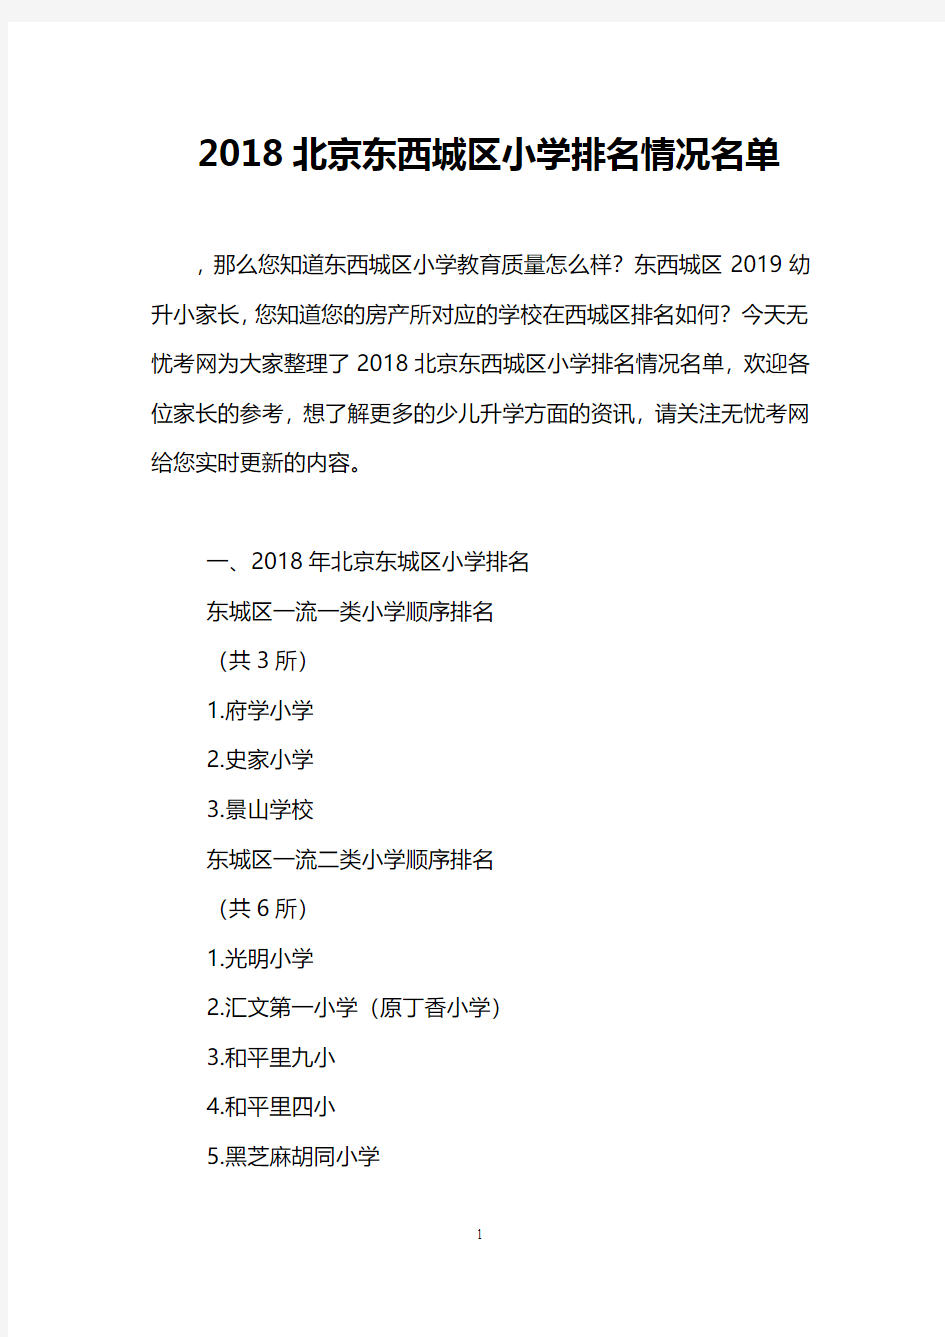 2018北京东西城区小学排名情况名单